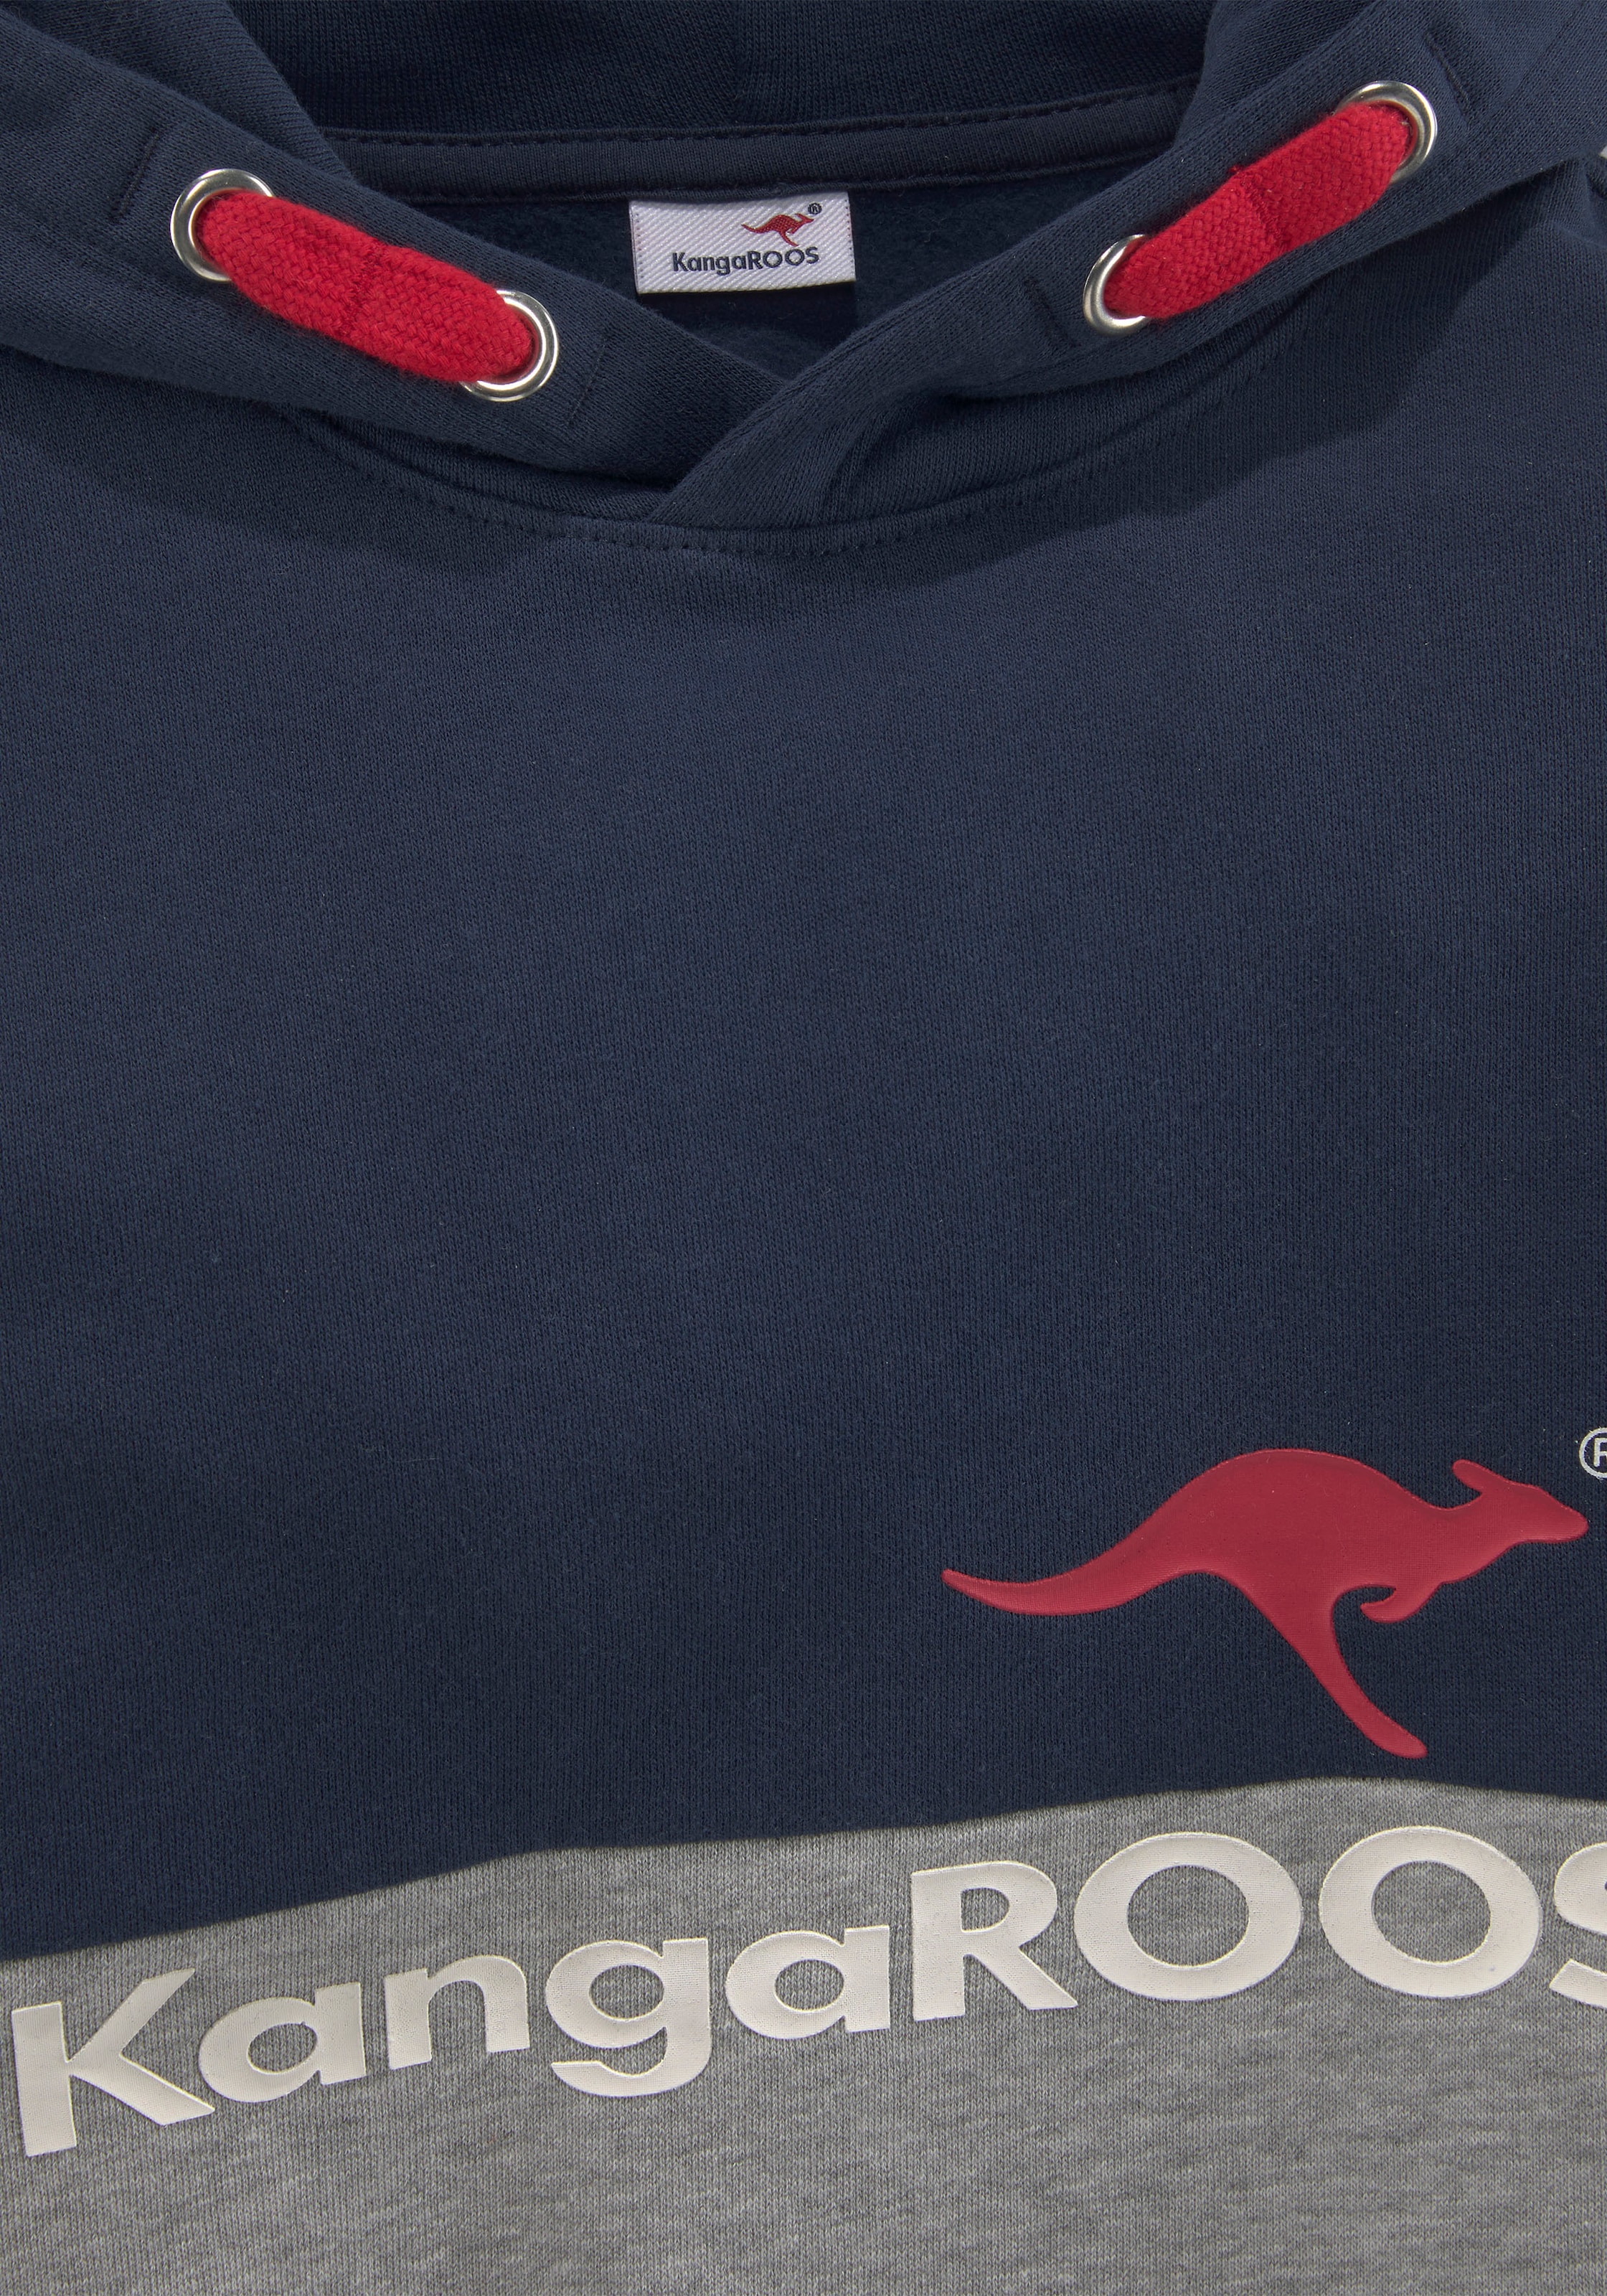 Preisermäßigung KangaROOS Kapuzensweatshirt, zweifarbig mit bestellen online BAUR Logodruck 